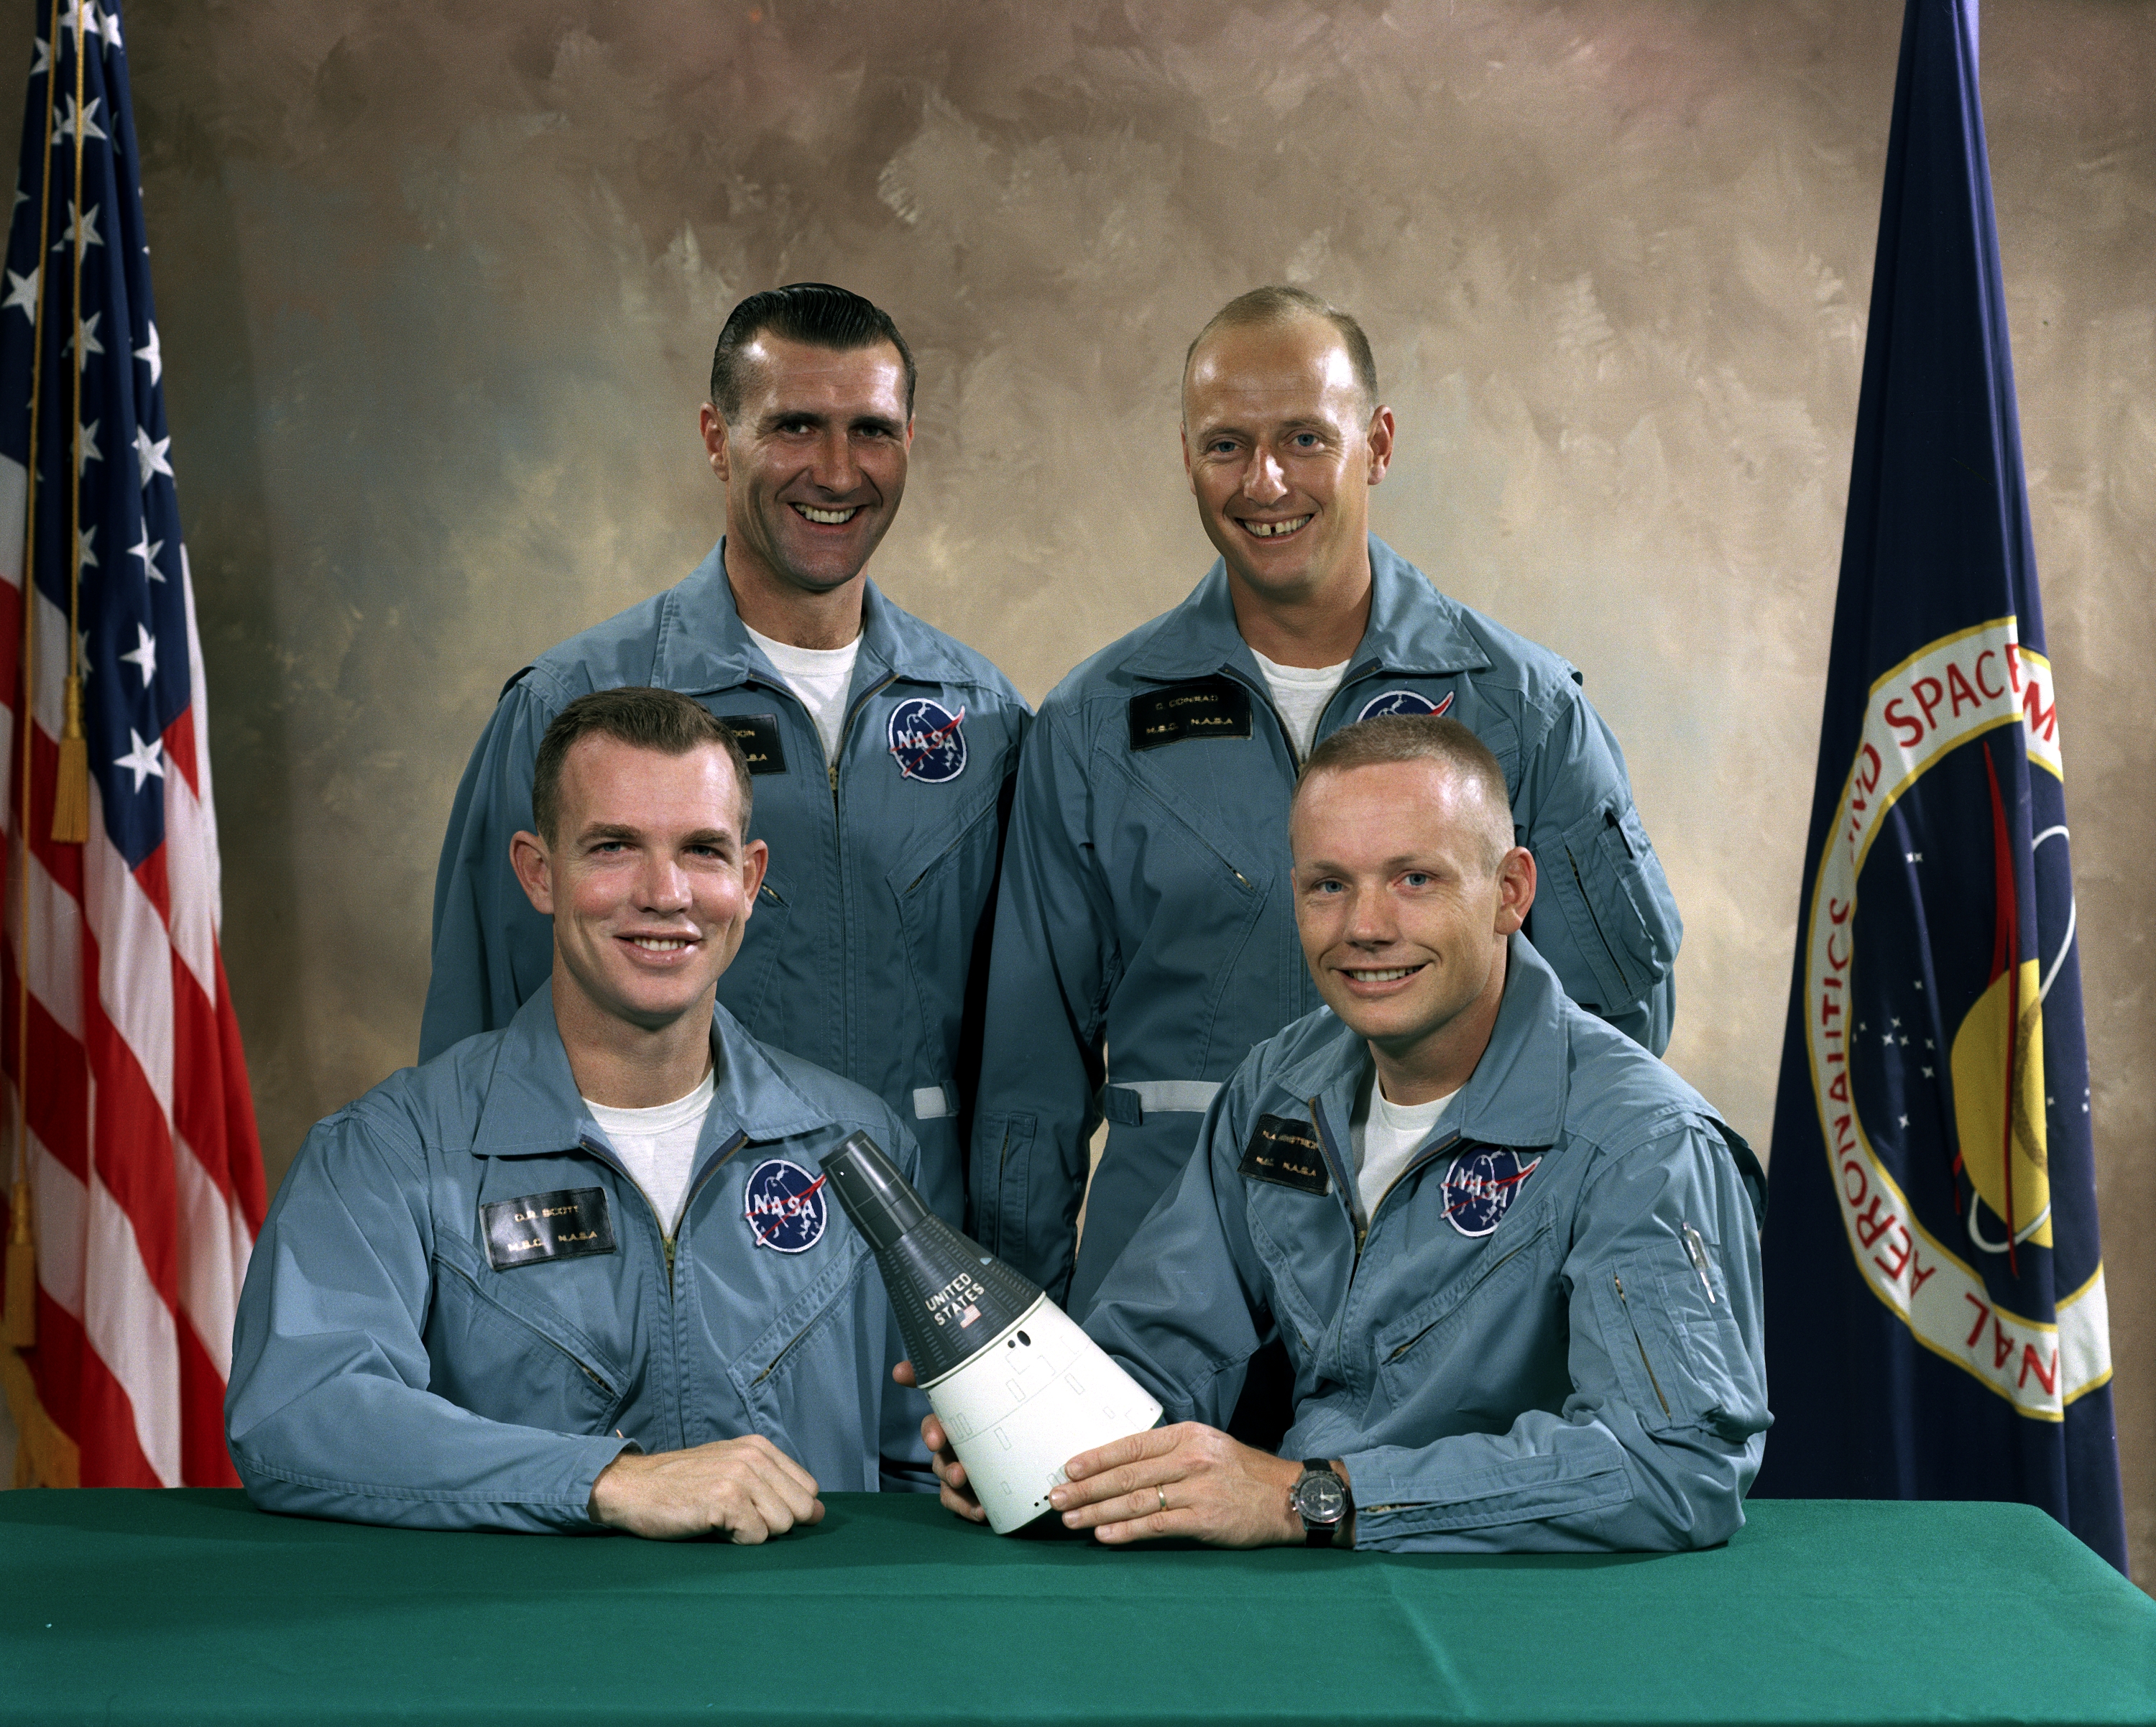 Gemini 8 prime and backup crews (S65-58502)